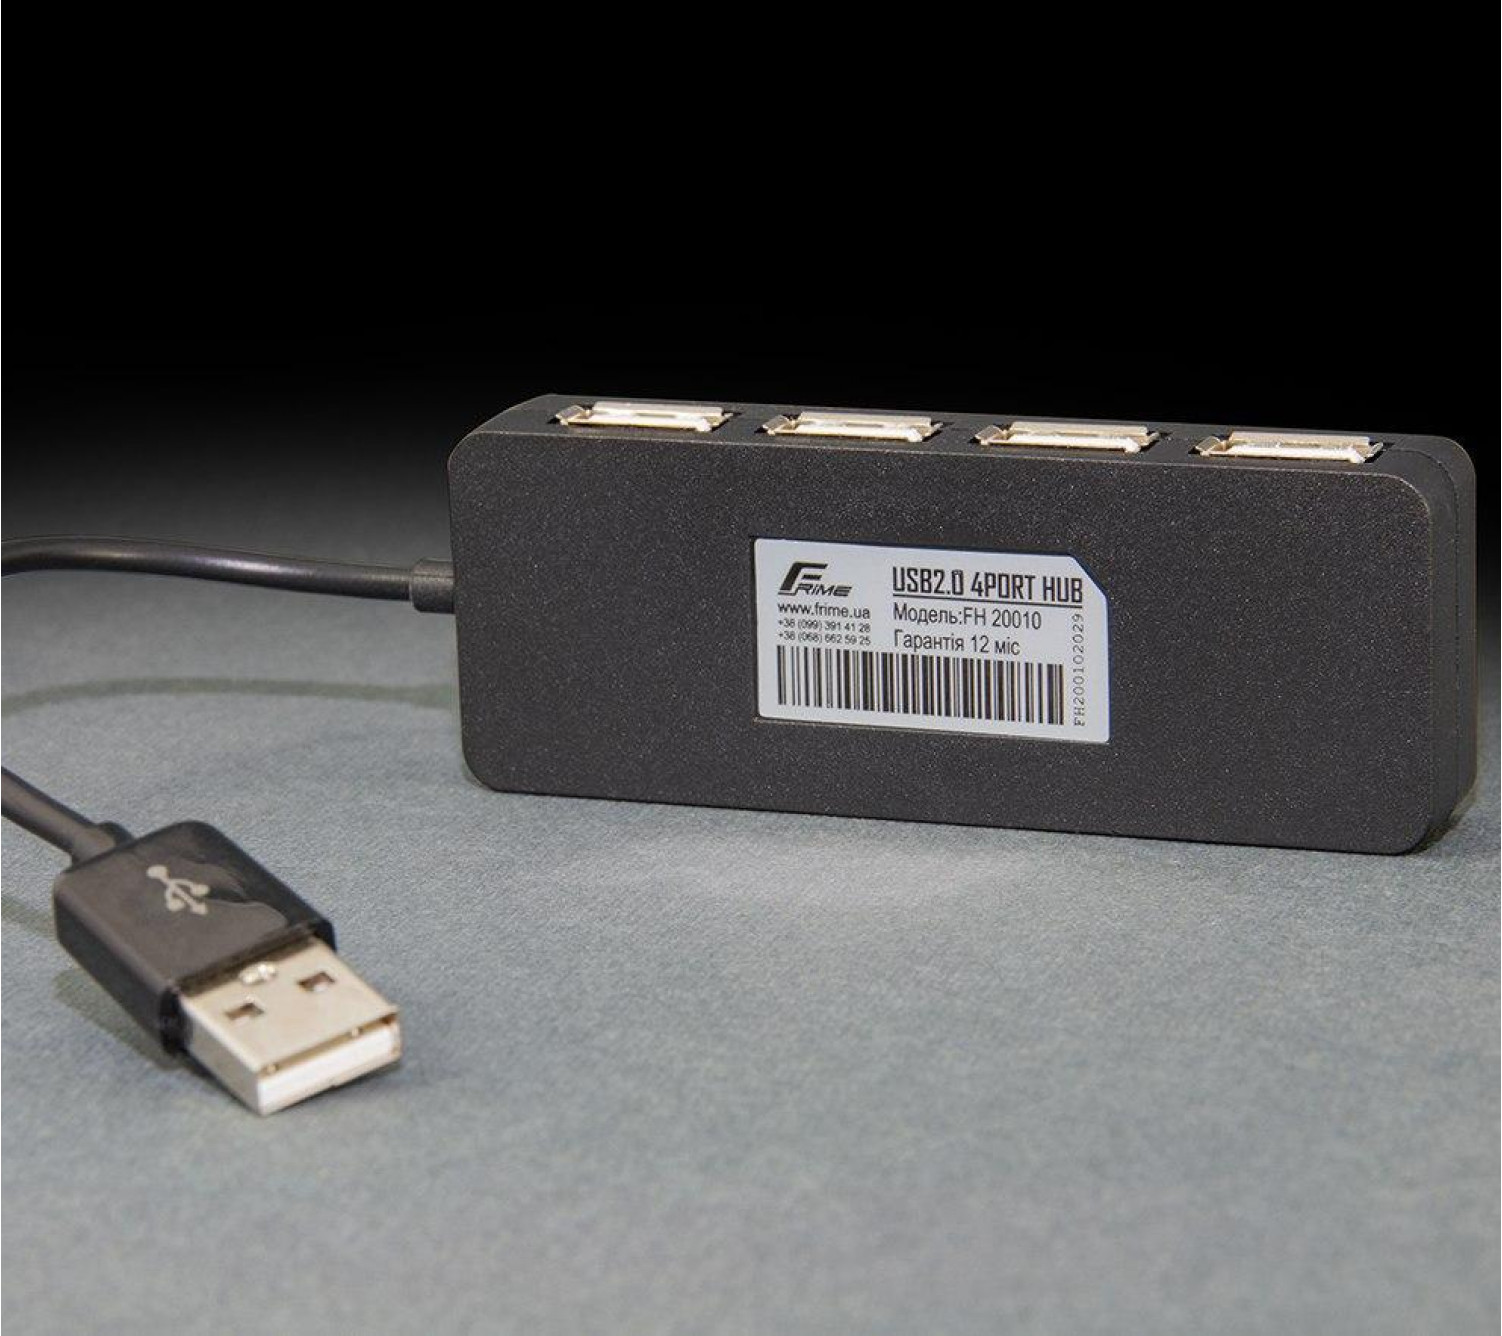 USB-хаб Frime 4-х портовый 2.0 Black (FH-20010)